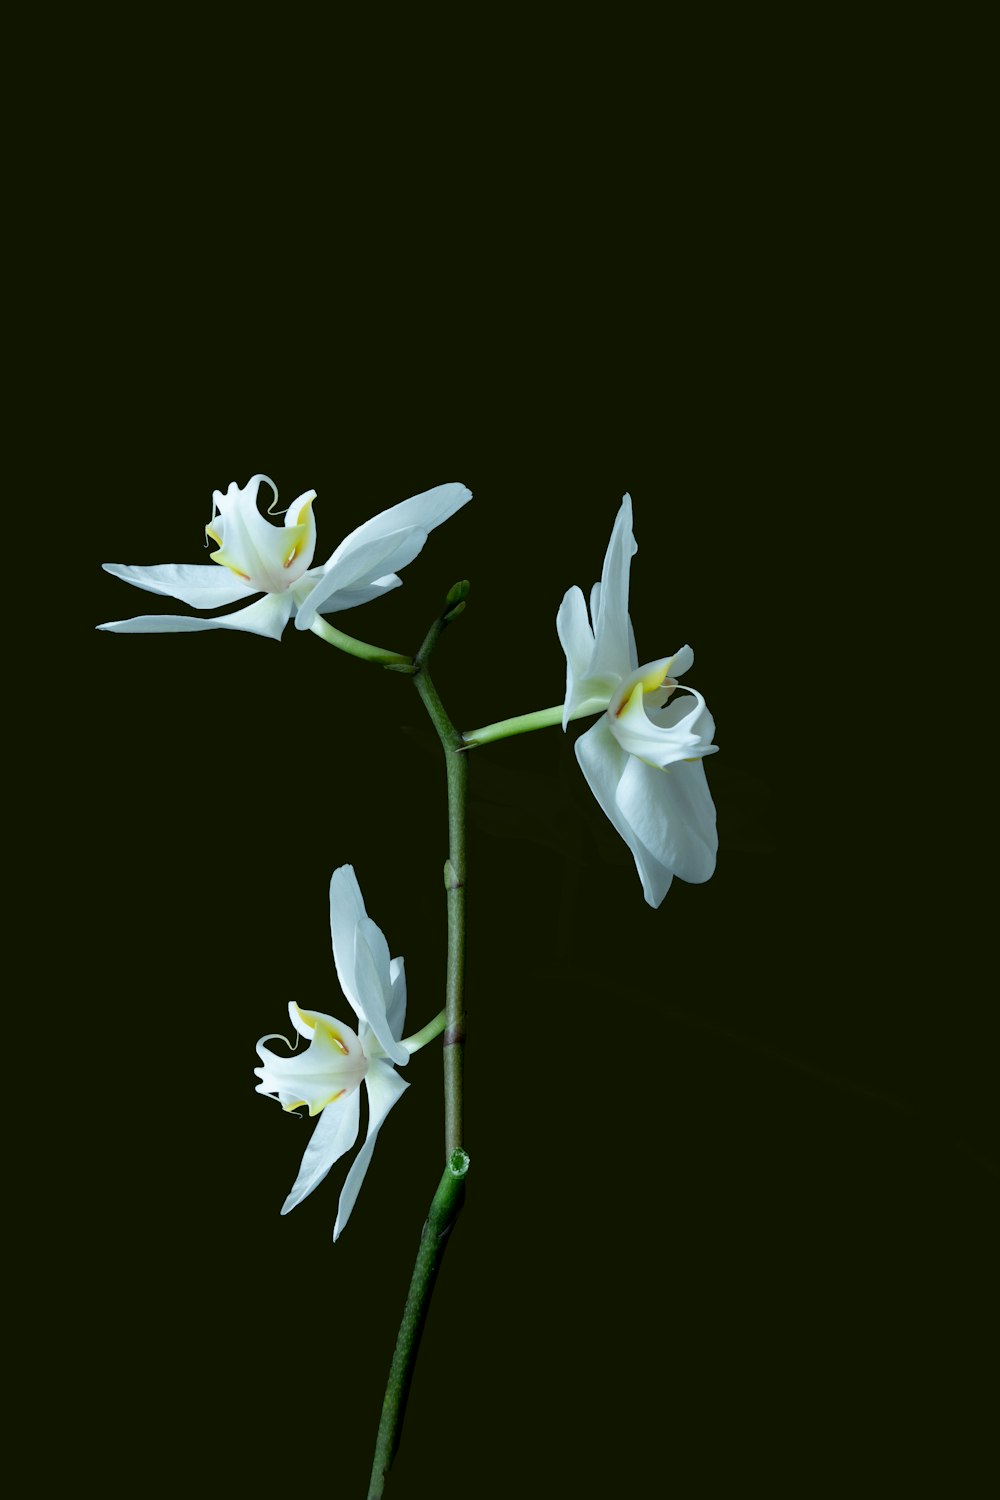 une seule fleur blanche sur une tige sur fond noir